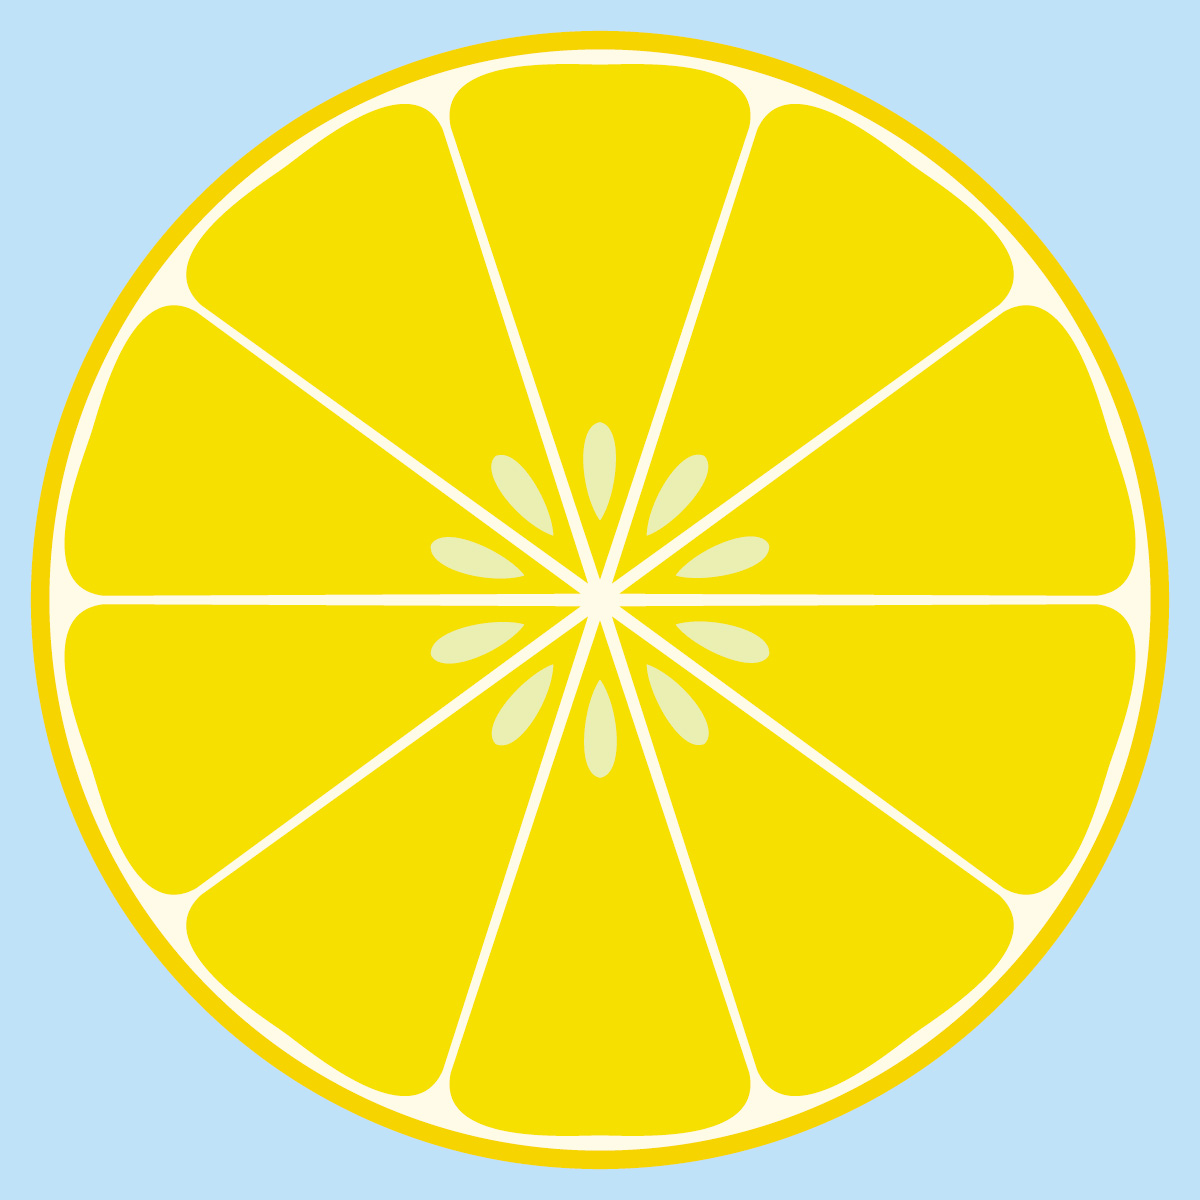 lemon clip art pictures - photo #35